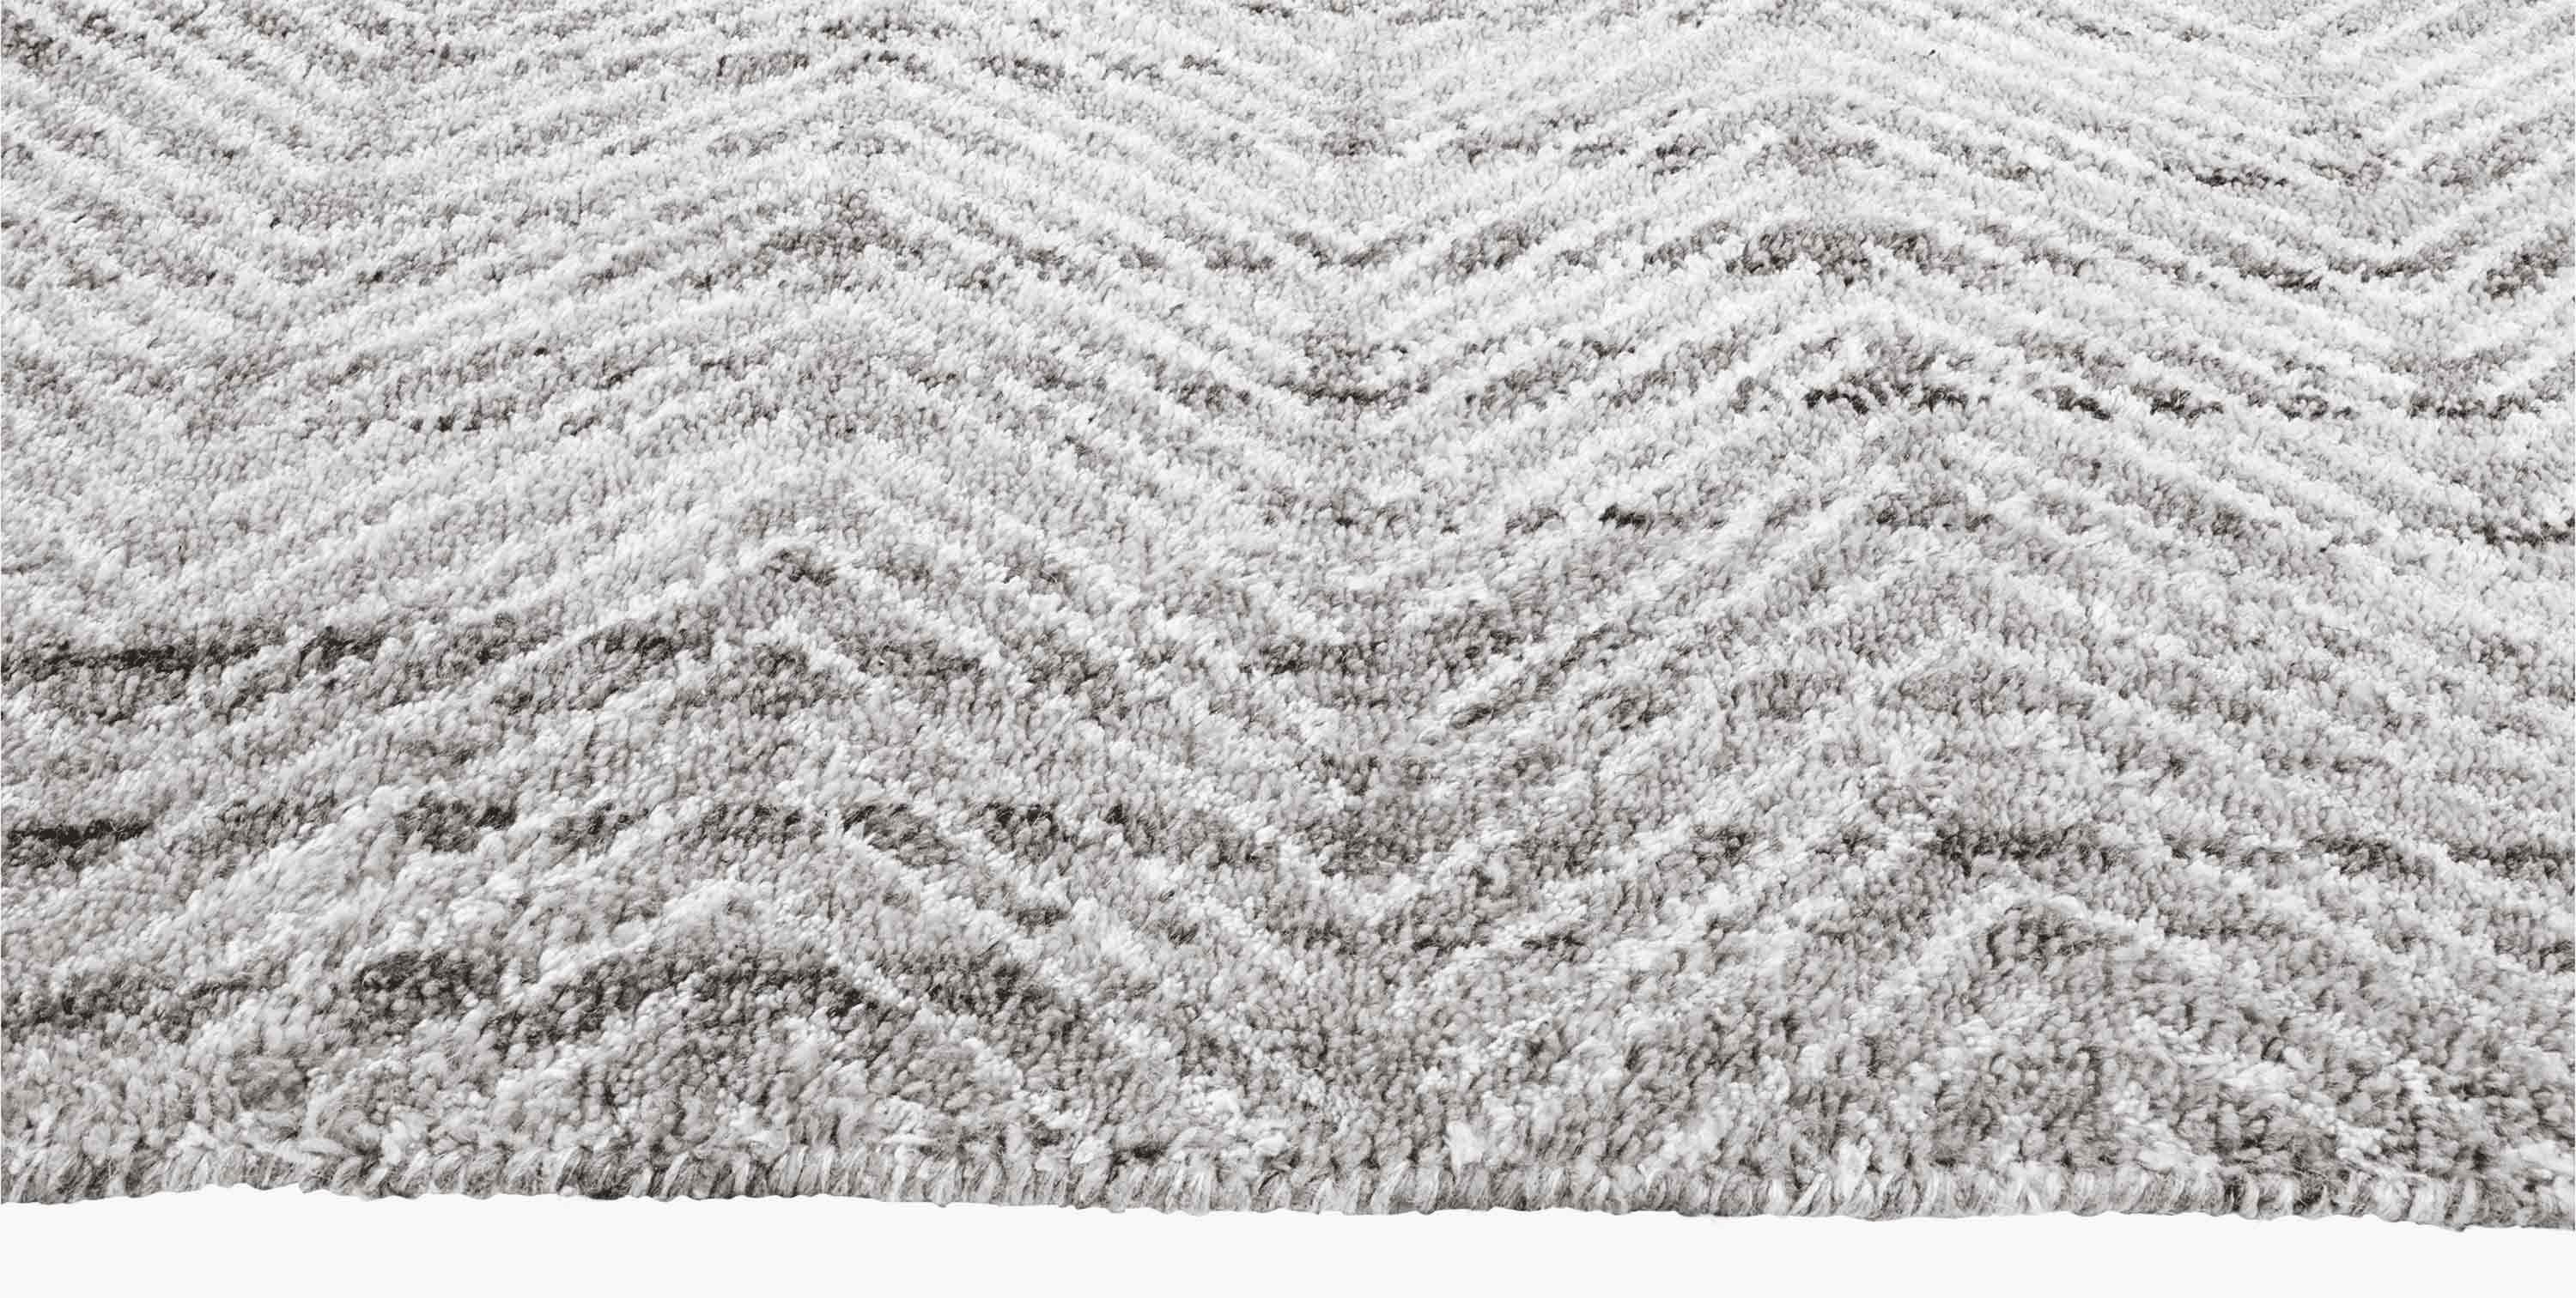 For Sale: Gray (Silver/White) Ben Soleimani Alia Rug– Hand-woven Chevron Wool + Viscose Black/Gray 10'x14' 3